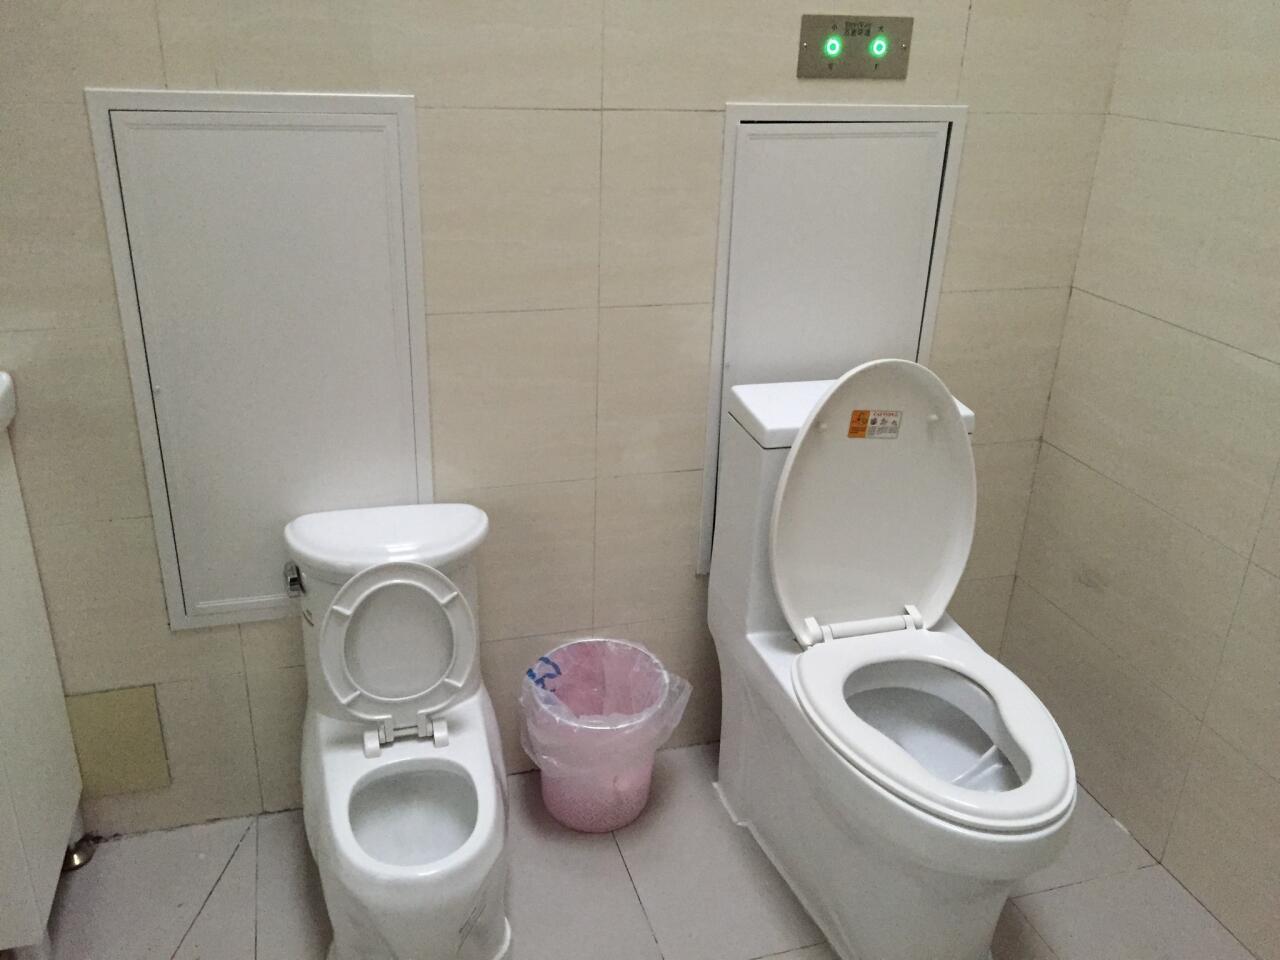 Beijing restroom